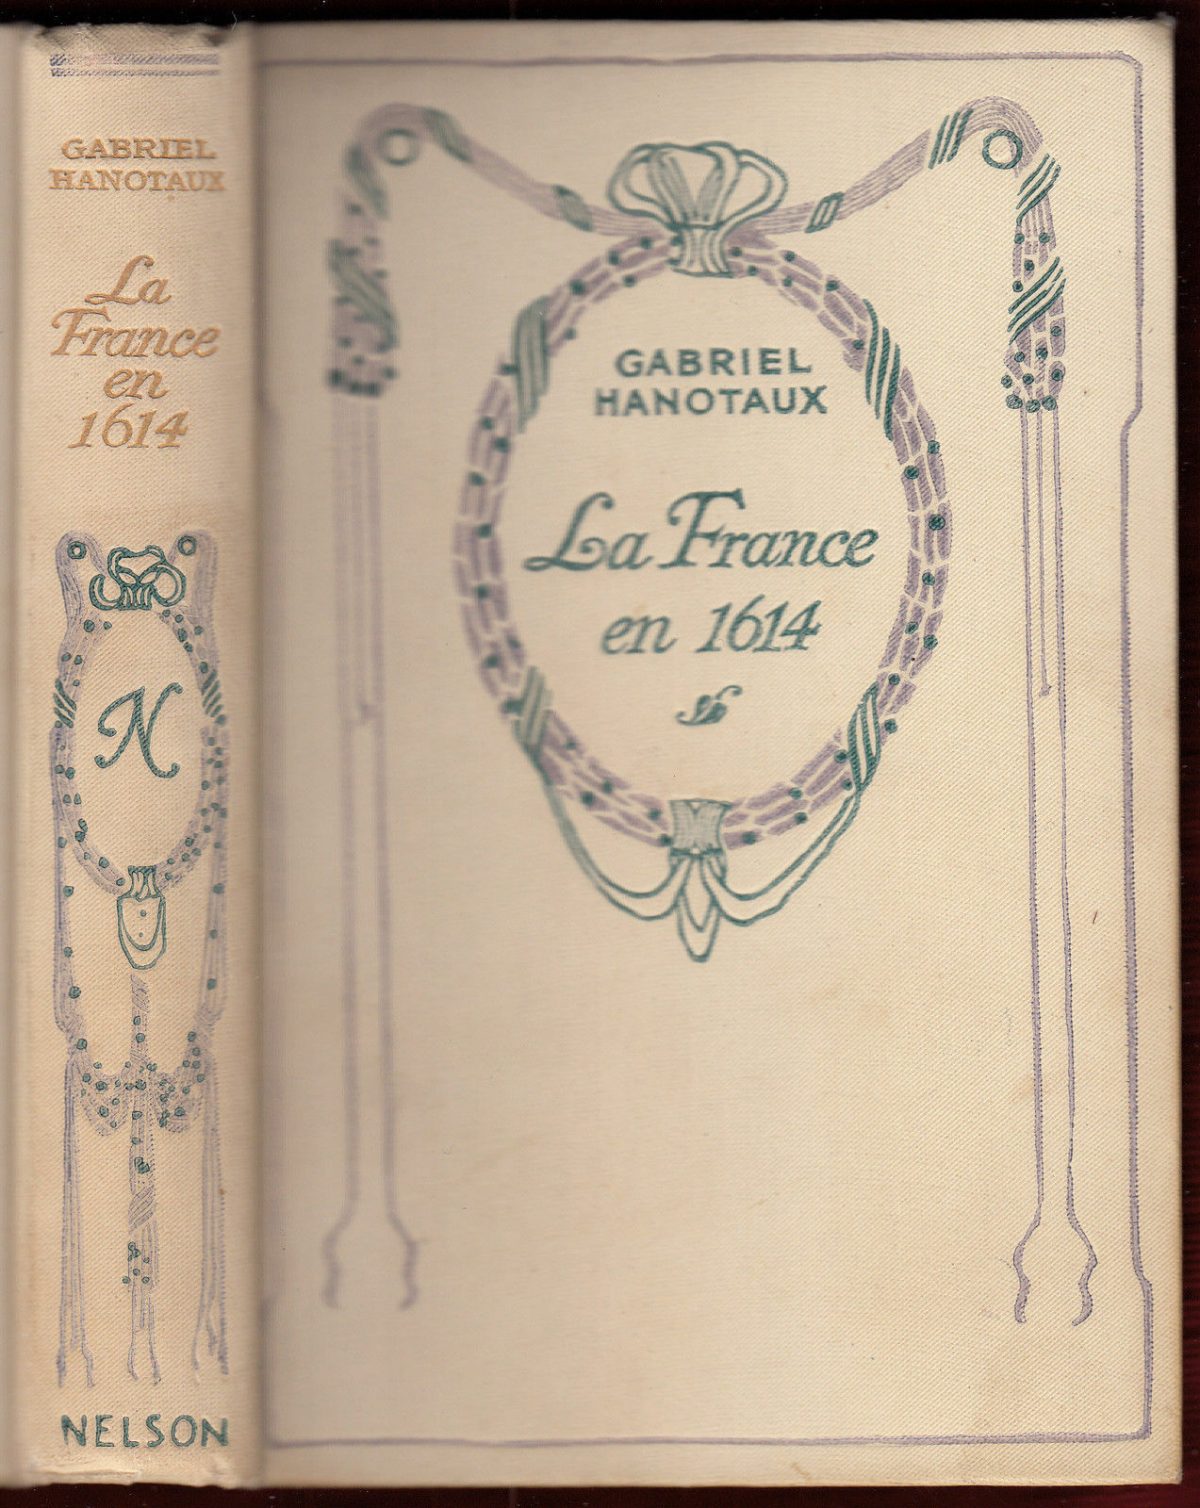 La France en 1614 by Gabriel Hanotaux book cover.